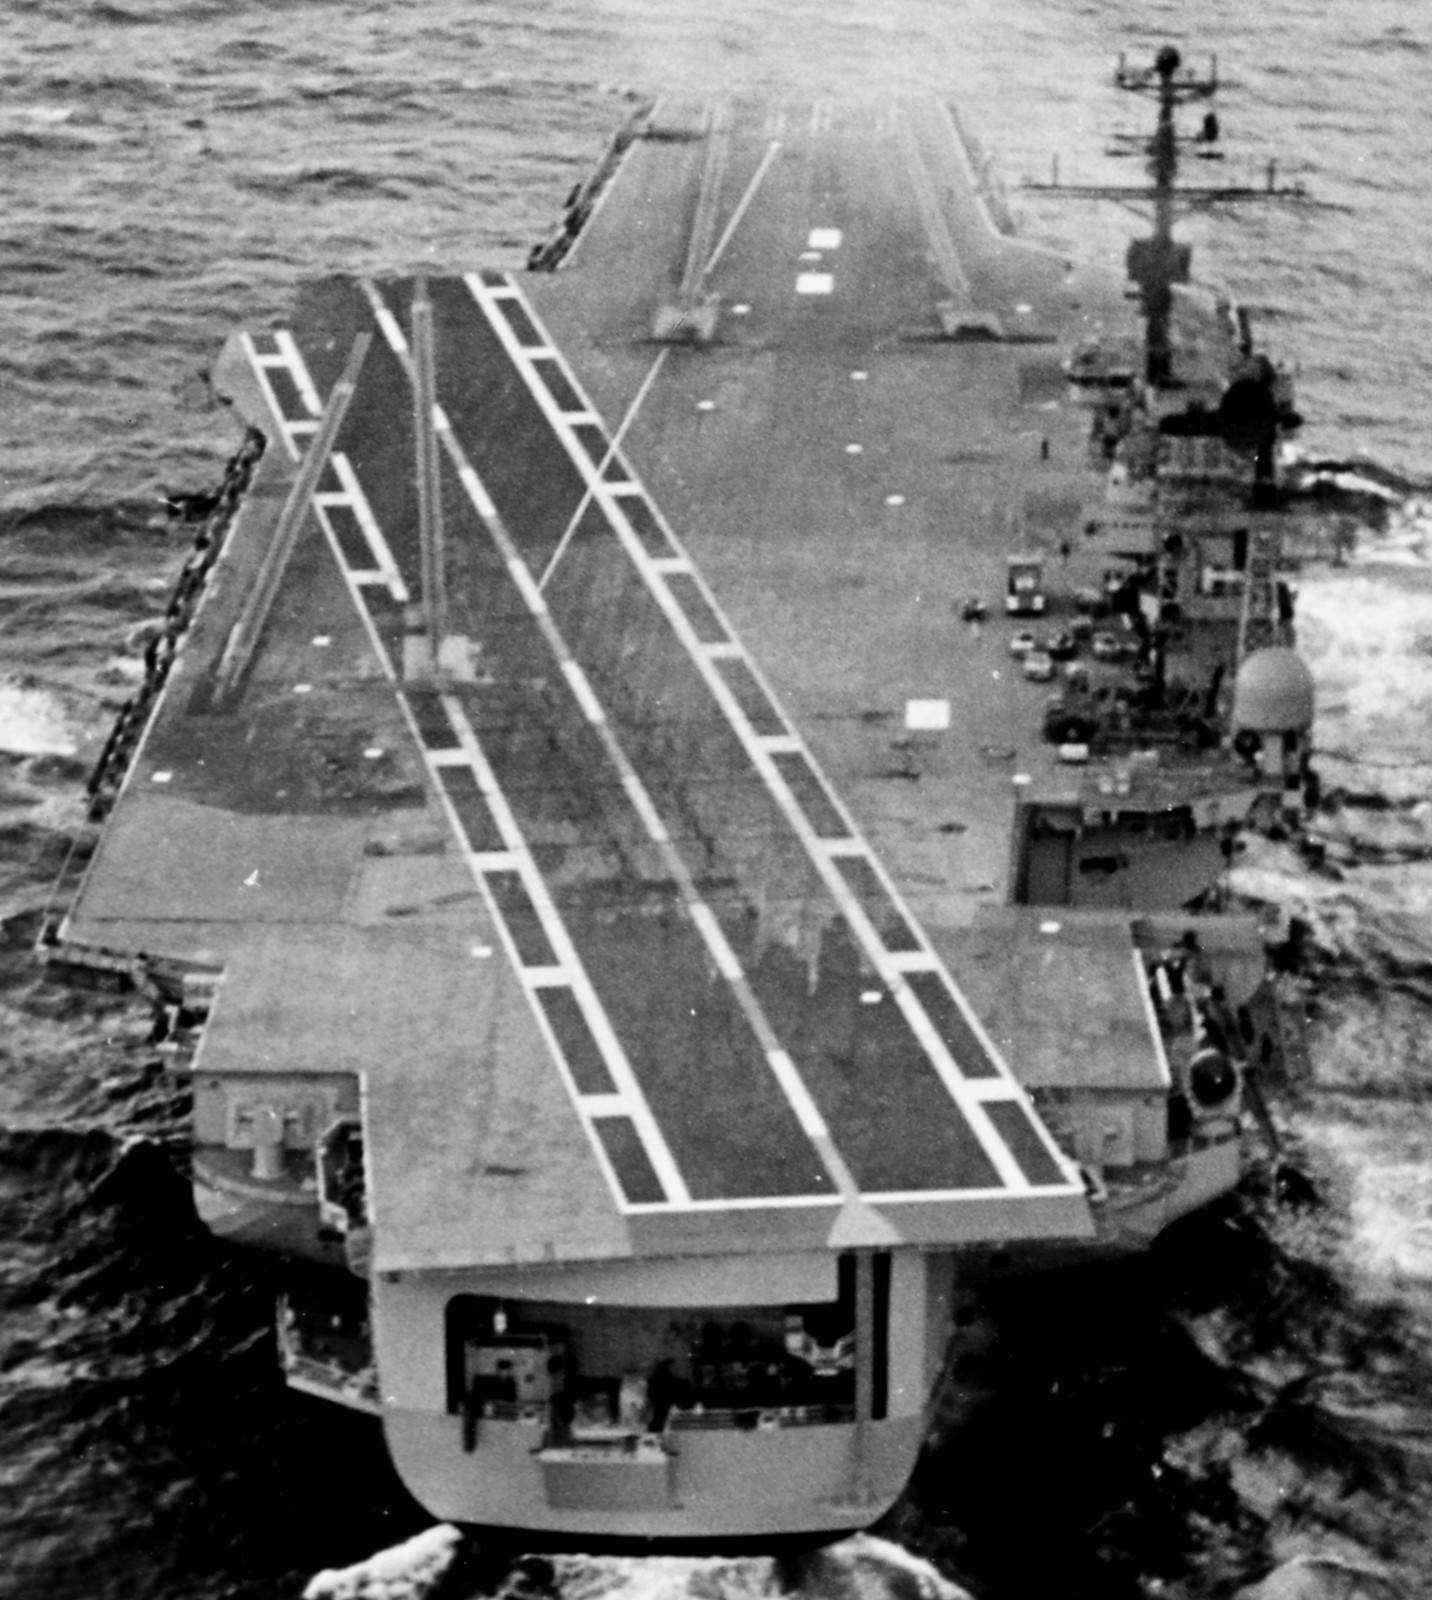 cv-66 uss america kitty hawk class aircraft carrier us navy 13